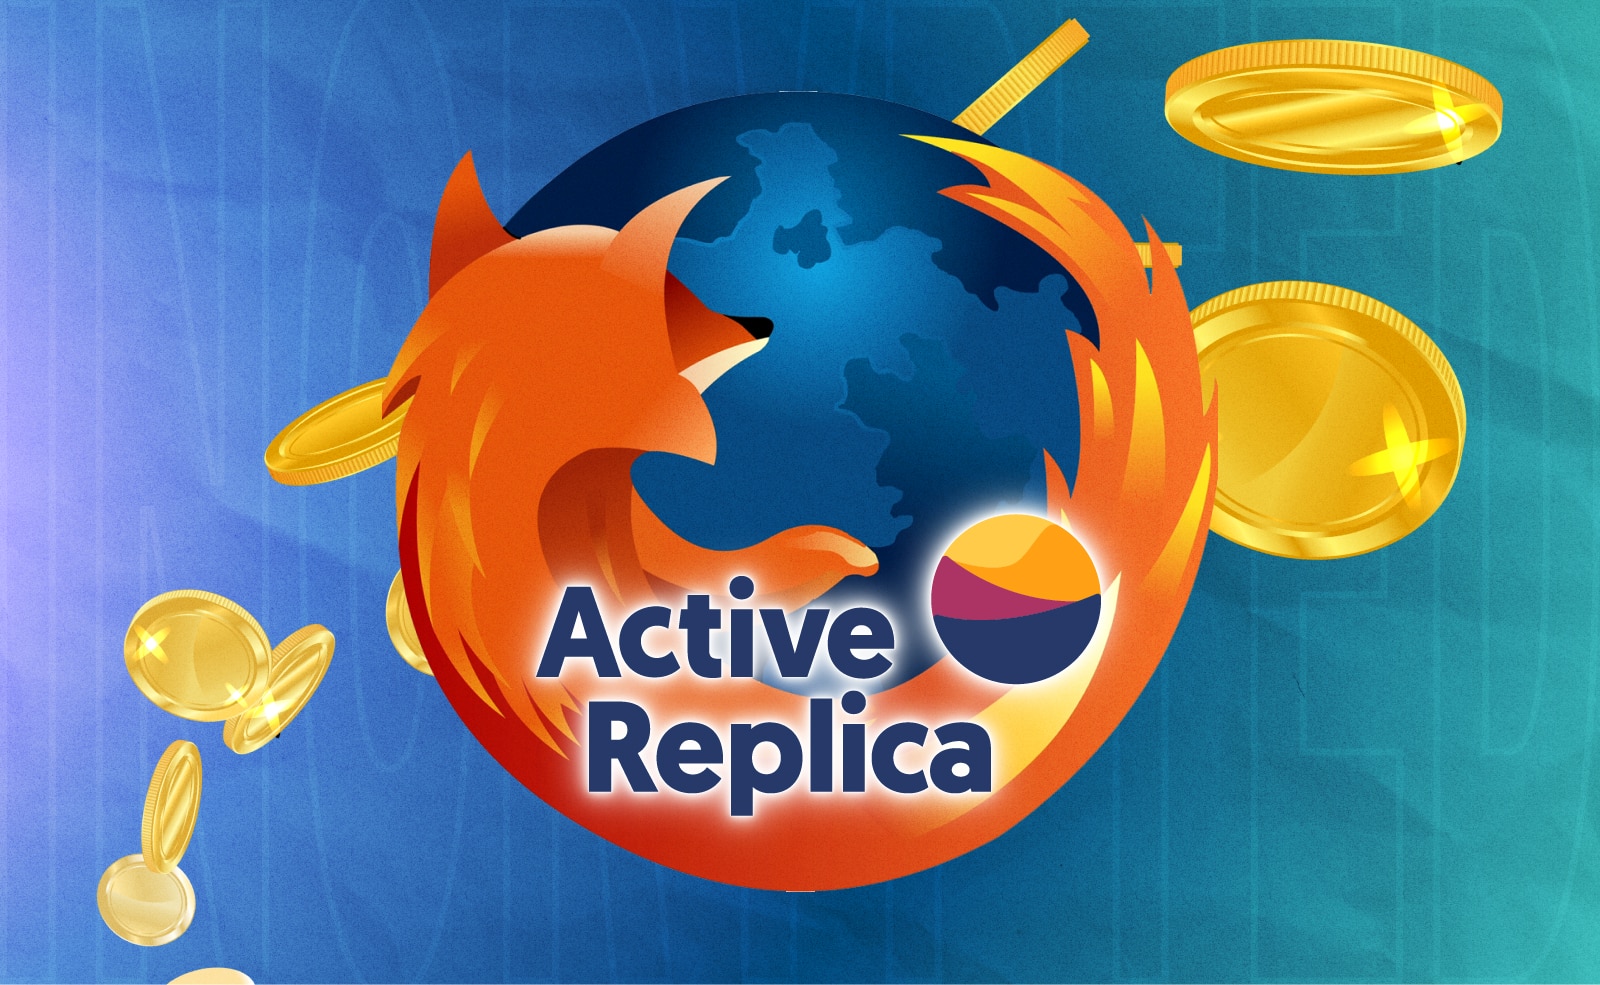 Интернет-браузер Mozilla приобрел Active Replica в рамках своей экосистемы Hubs creator. Заглавный коллаж новости.